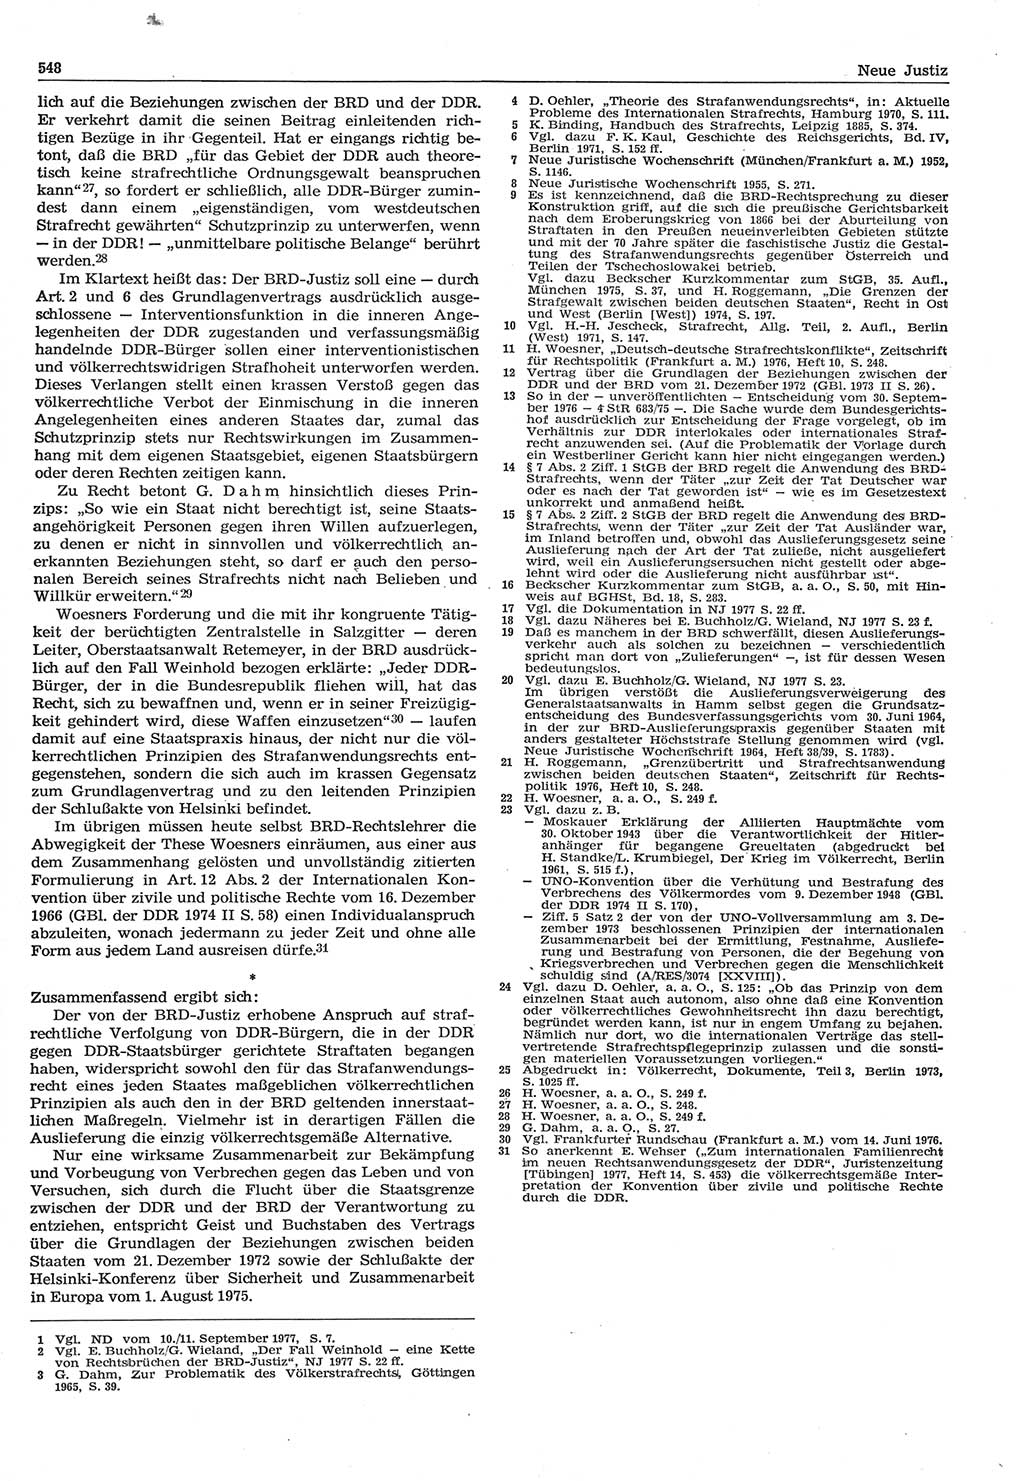 Neue Justiz (NJ), Zeitschrift für Recht und Rechtswissenschaft-Zeitschrift, sozialistisches Recht und Gesetzlichkeit, 31. Jahrgang 1977, Seite 548 (NJ DDR 1977, S. 548)